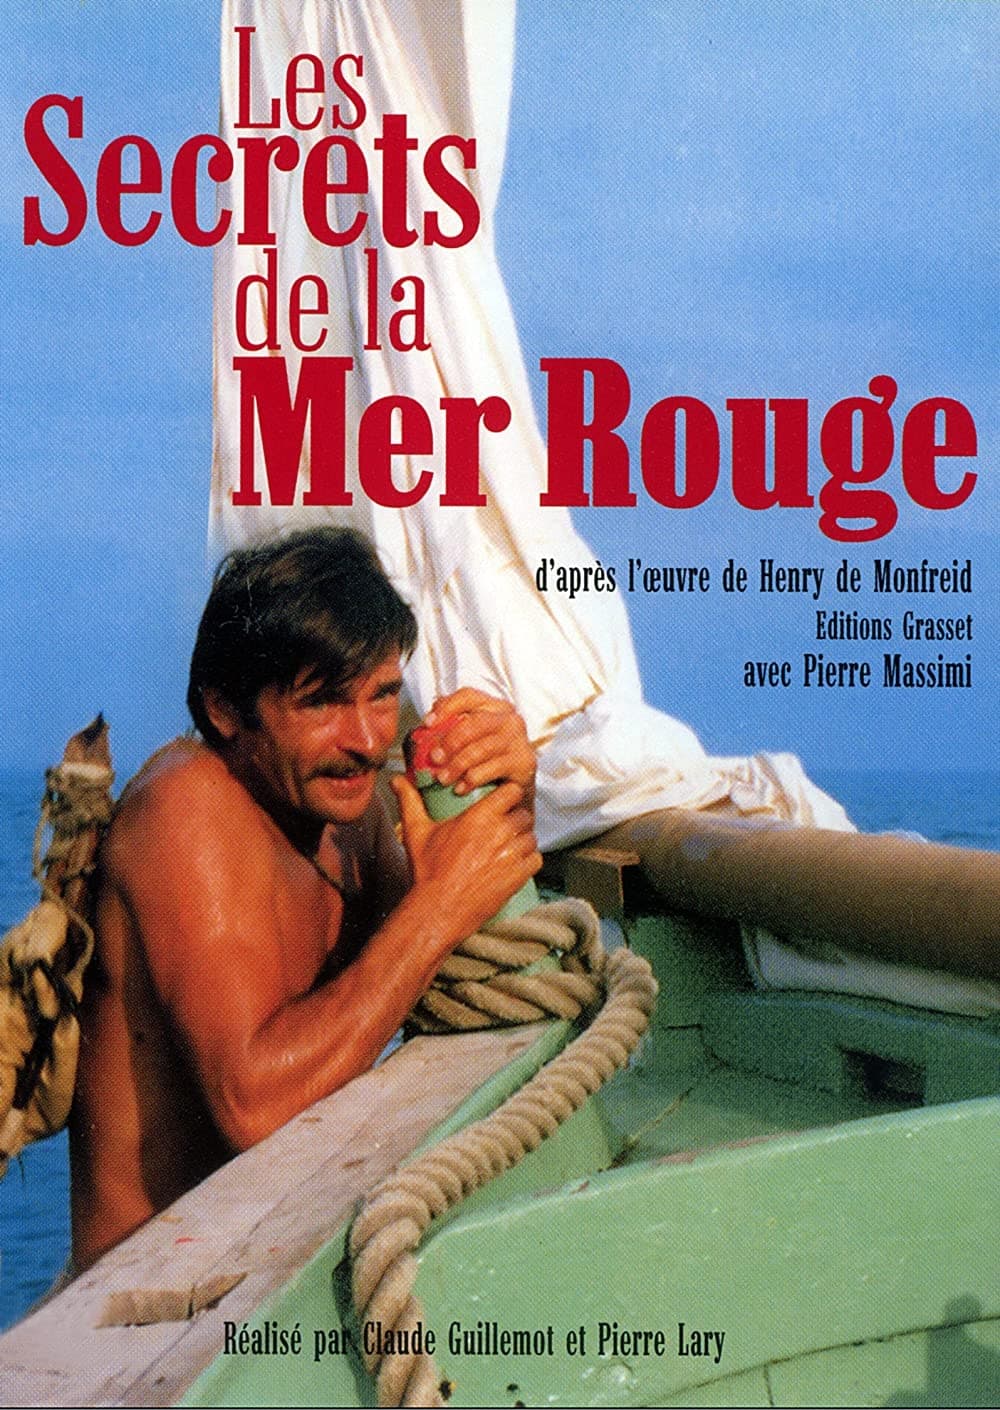 Les secrets de la Mer Rouge (1968)